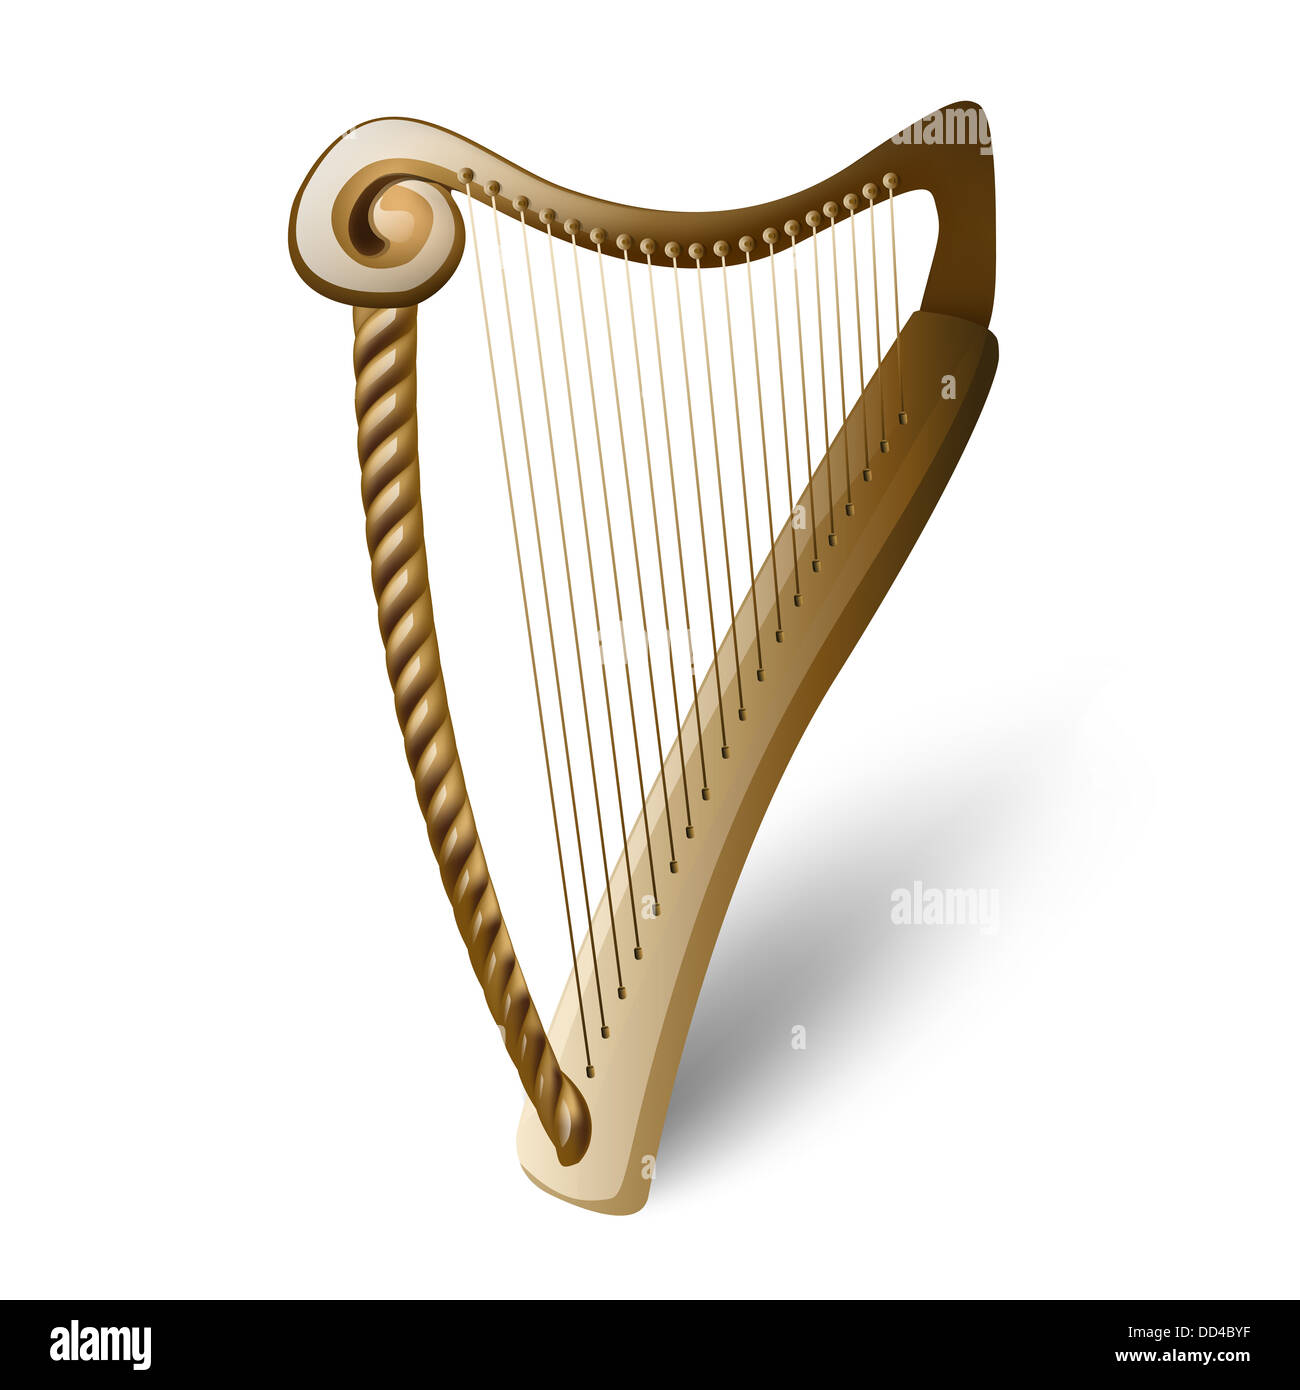 Instrument De Musique De Guimbarde Image stock - Image du harpe